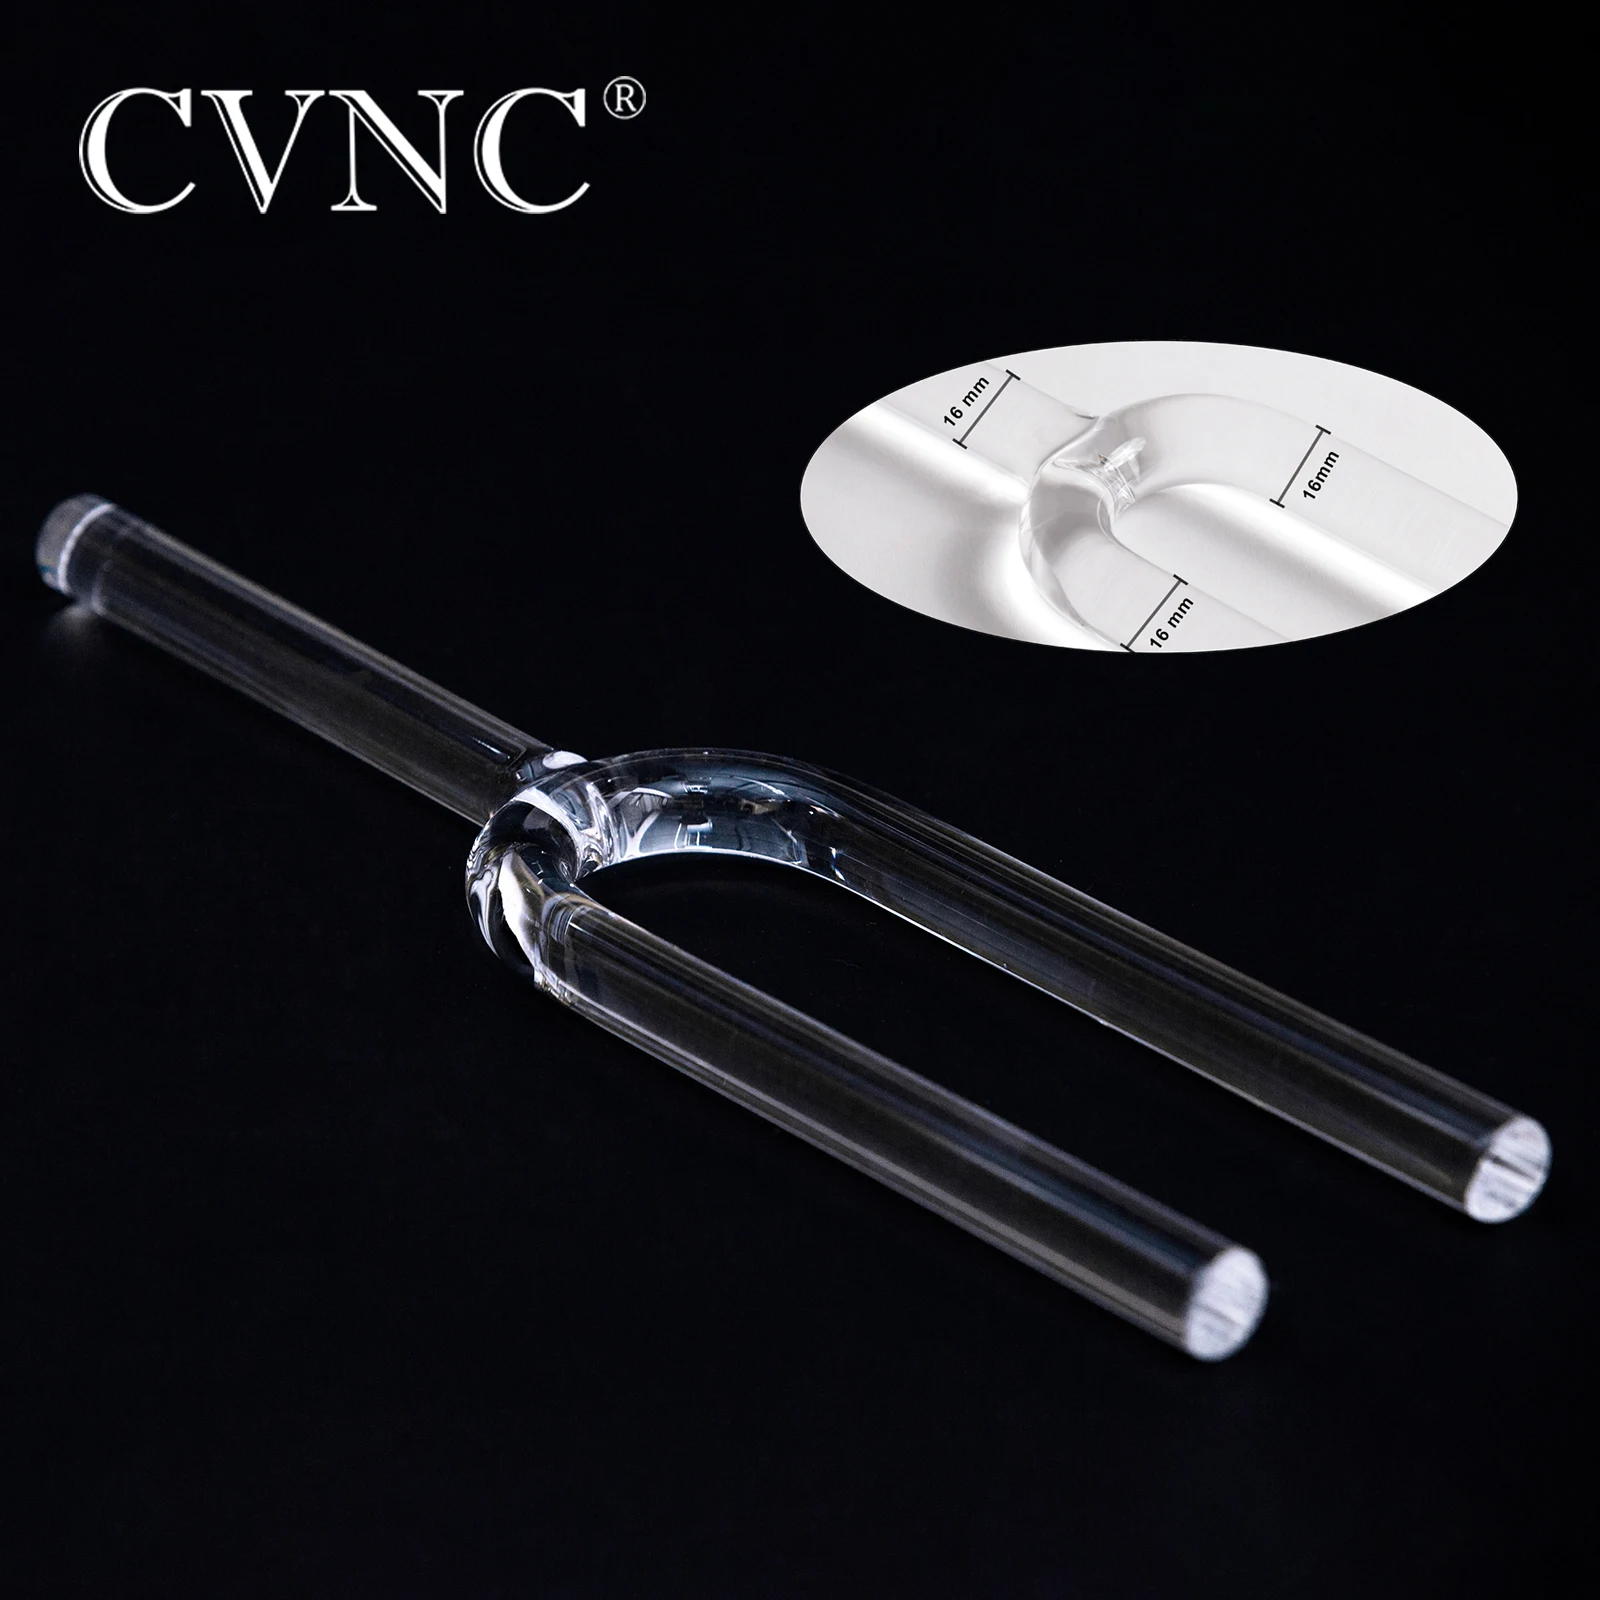 cvnc-horquilla-de-sintonizacion-para-curacion-de-sonido-y-meditacion-cristal-de-cuarzo-transparente-440hz-o-432hz-16mm